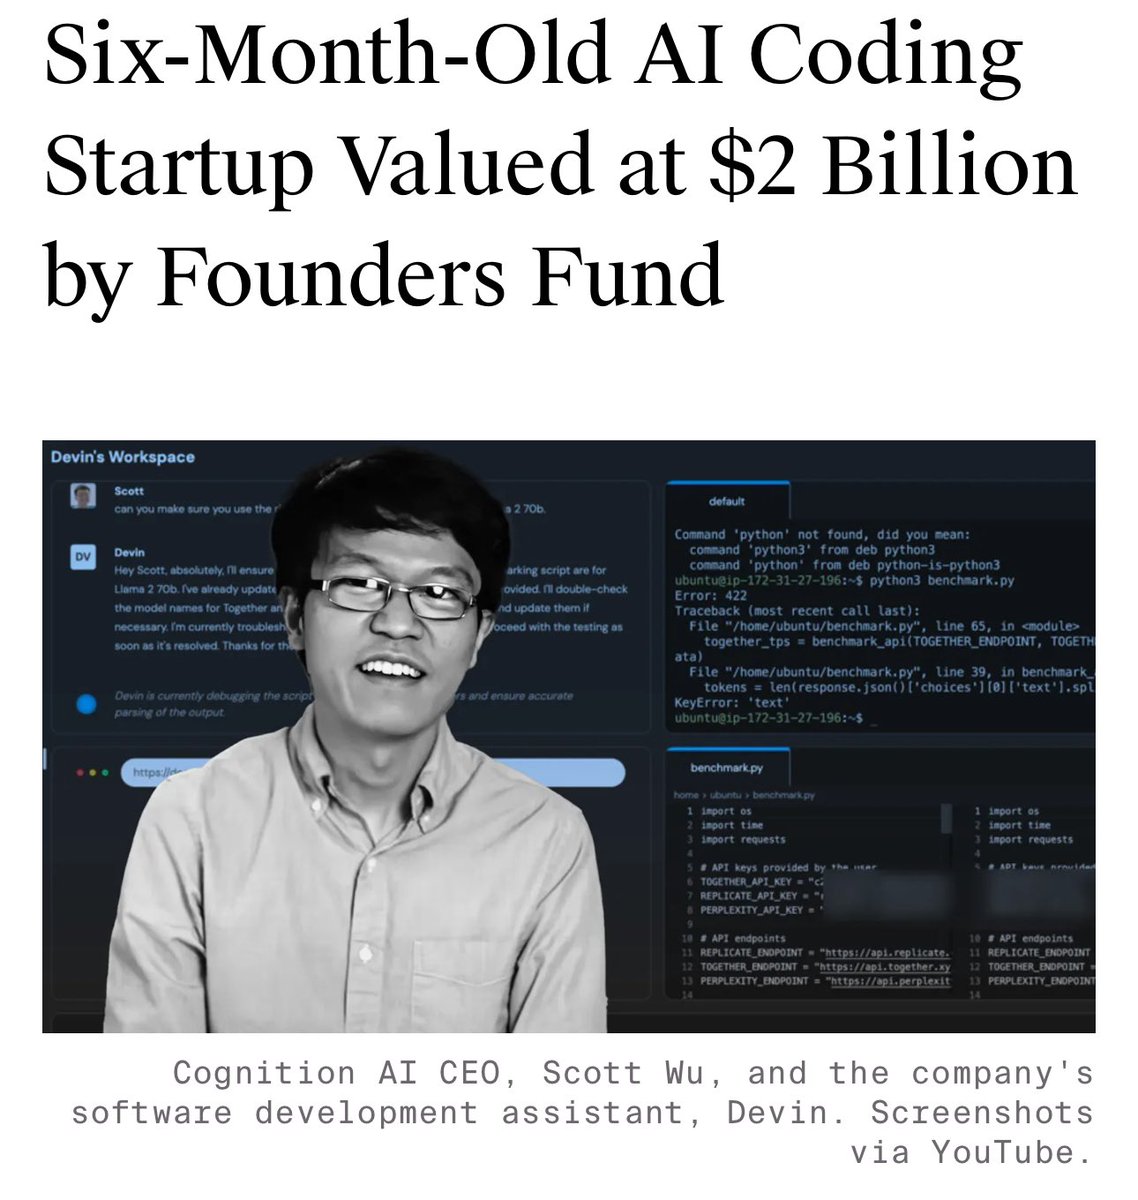 5. Dünya'nın ilk yapay zeka yazılım uzmanı Devin'in kurucusu şirket Cognition Labs, sadece 6 ayda 2 milyar dolar değere ulaştı.

Devin henüz piyasaya bile sürülmeden şirketin bu kadar büyük değere ulaşması tek bir anlama geliyor, Devin beklediğimizden çok daha iyi.